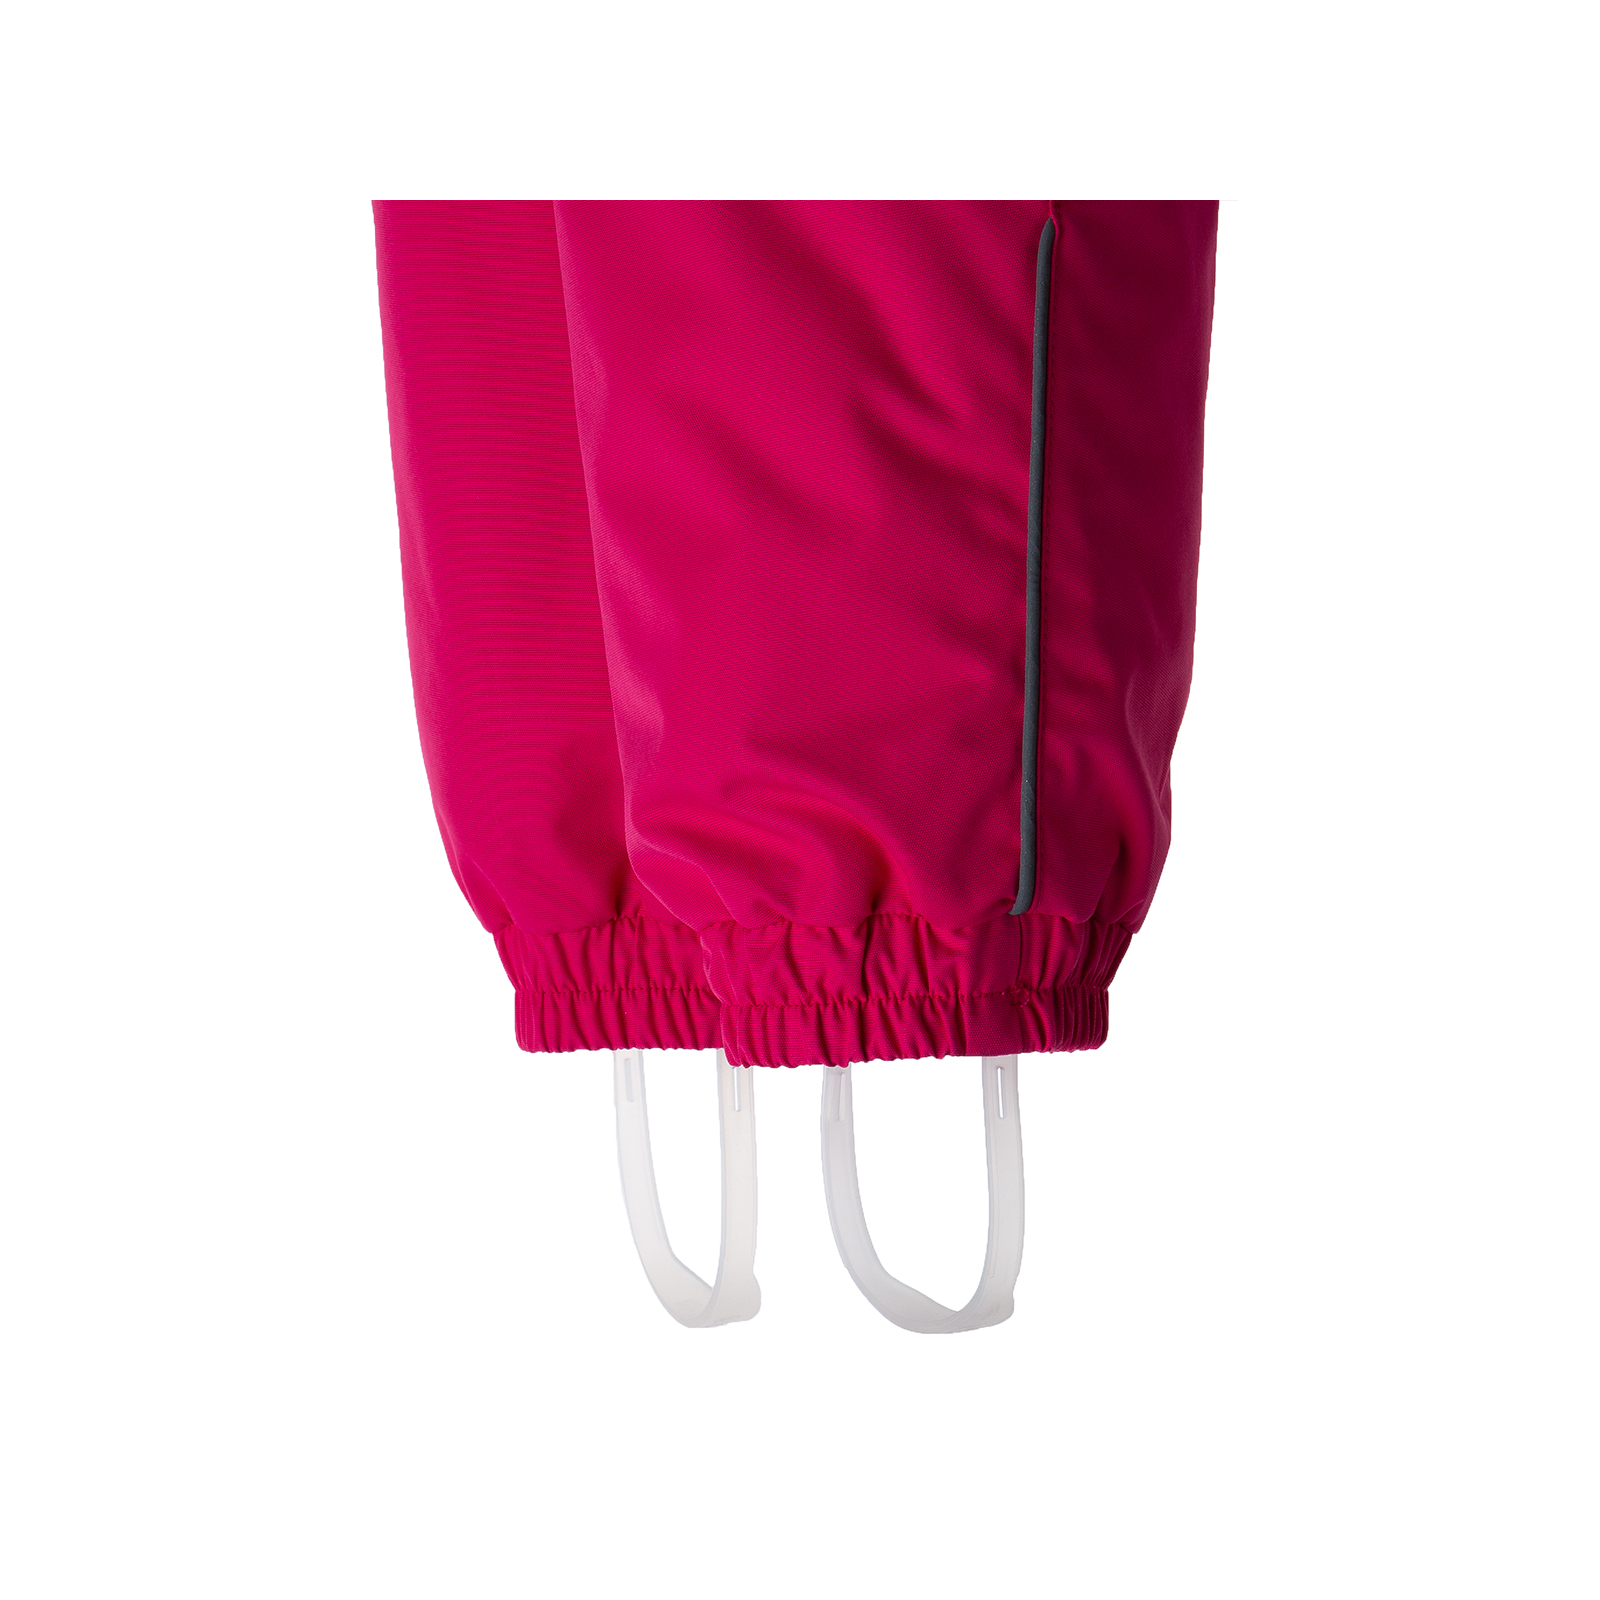 Комплект верхней одежды Huppa AVERY-1 41780030 фуксия с принтом/фуксия 80 (4741468928609) изображение 4